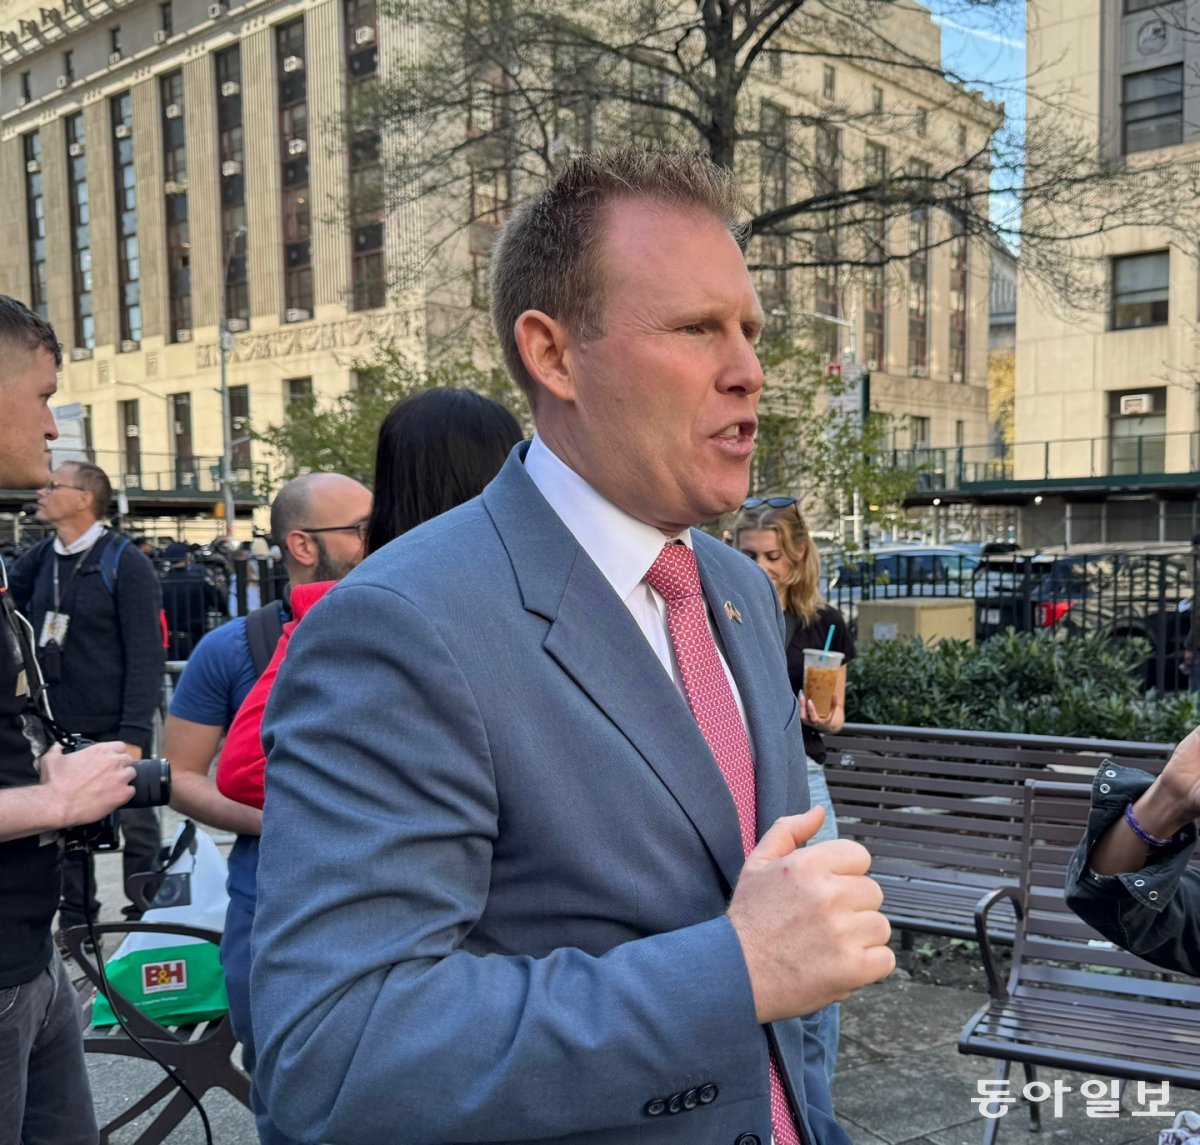 15일(현지 시간) 미국 뉴욕 맨해튼지방법원 앞에서 트럼프의 변호사 루디 줄리아니의 아들 앤드류 줄리아니가 “편향된 배심원만 없다면 트럼프는 반드시 이길 것”이라고 말하고 있다. 뉴욕=김현수 특파원 kimhs@donga.com